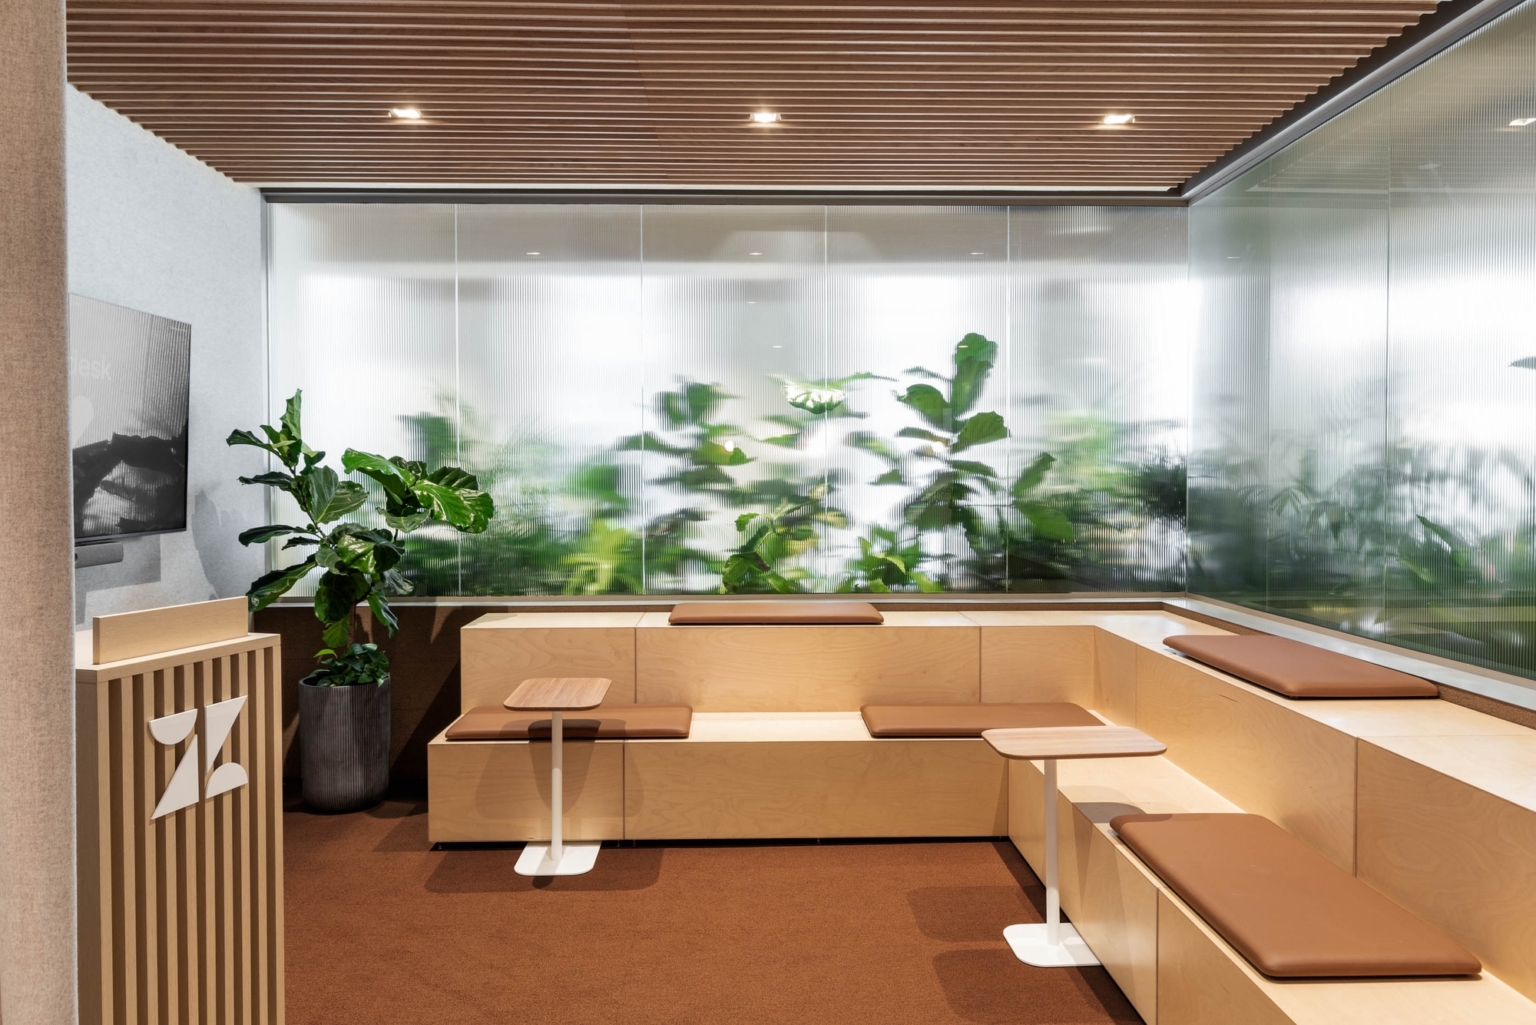 【Zendeskのオフィスデザイン】- カナダ, モントリオールの会議/ミーティングスペース